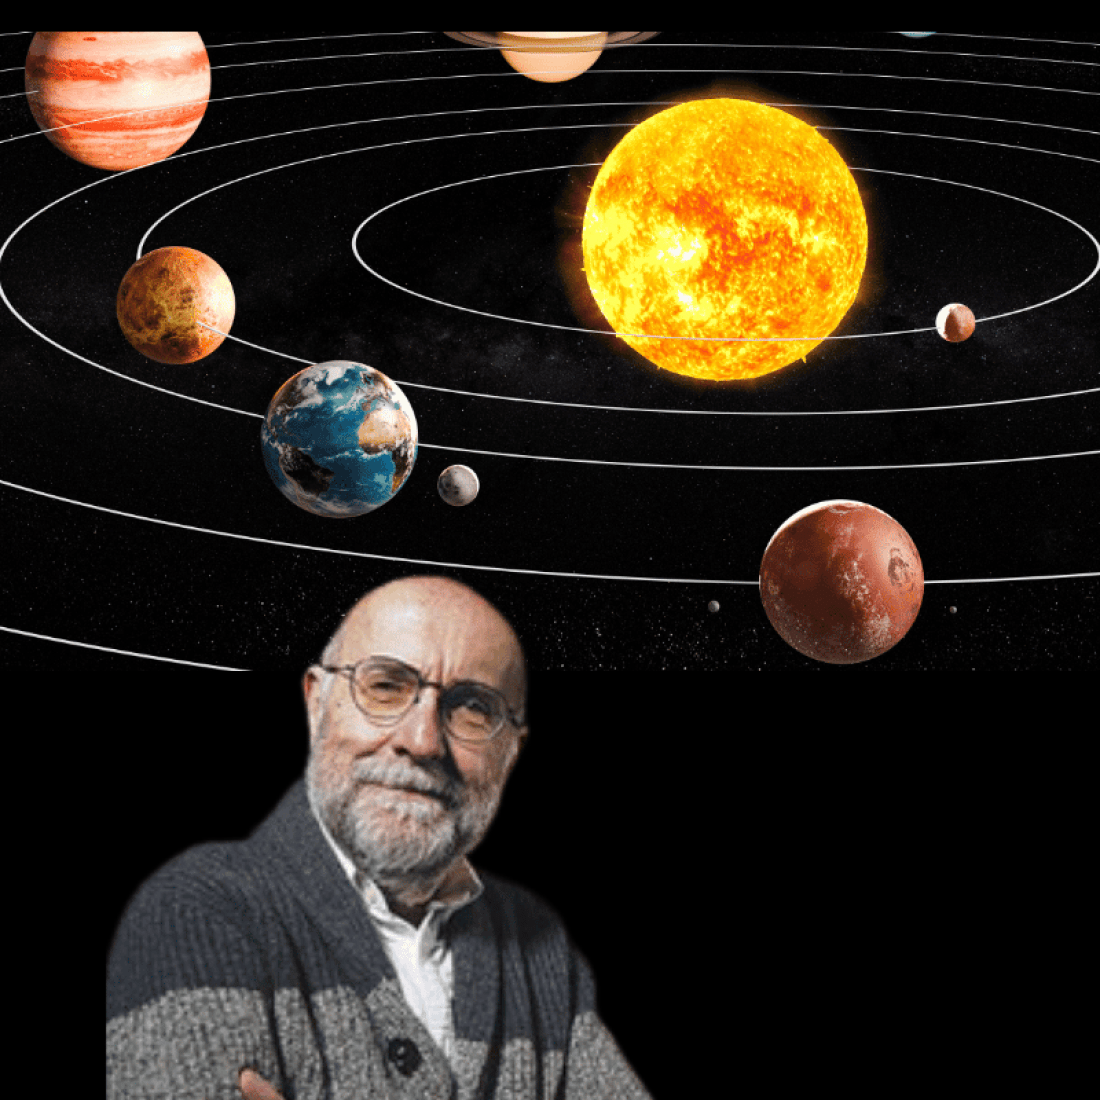 Solar system with Dan Fleisch